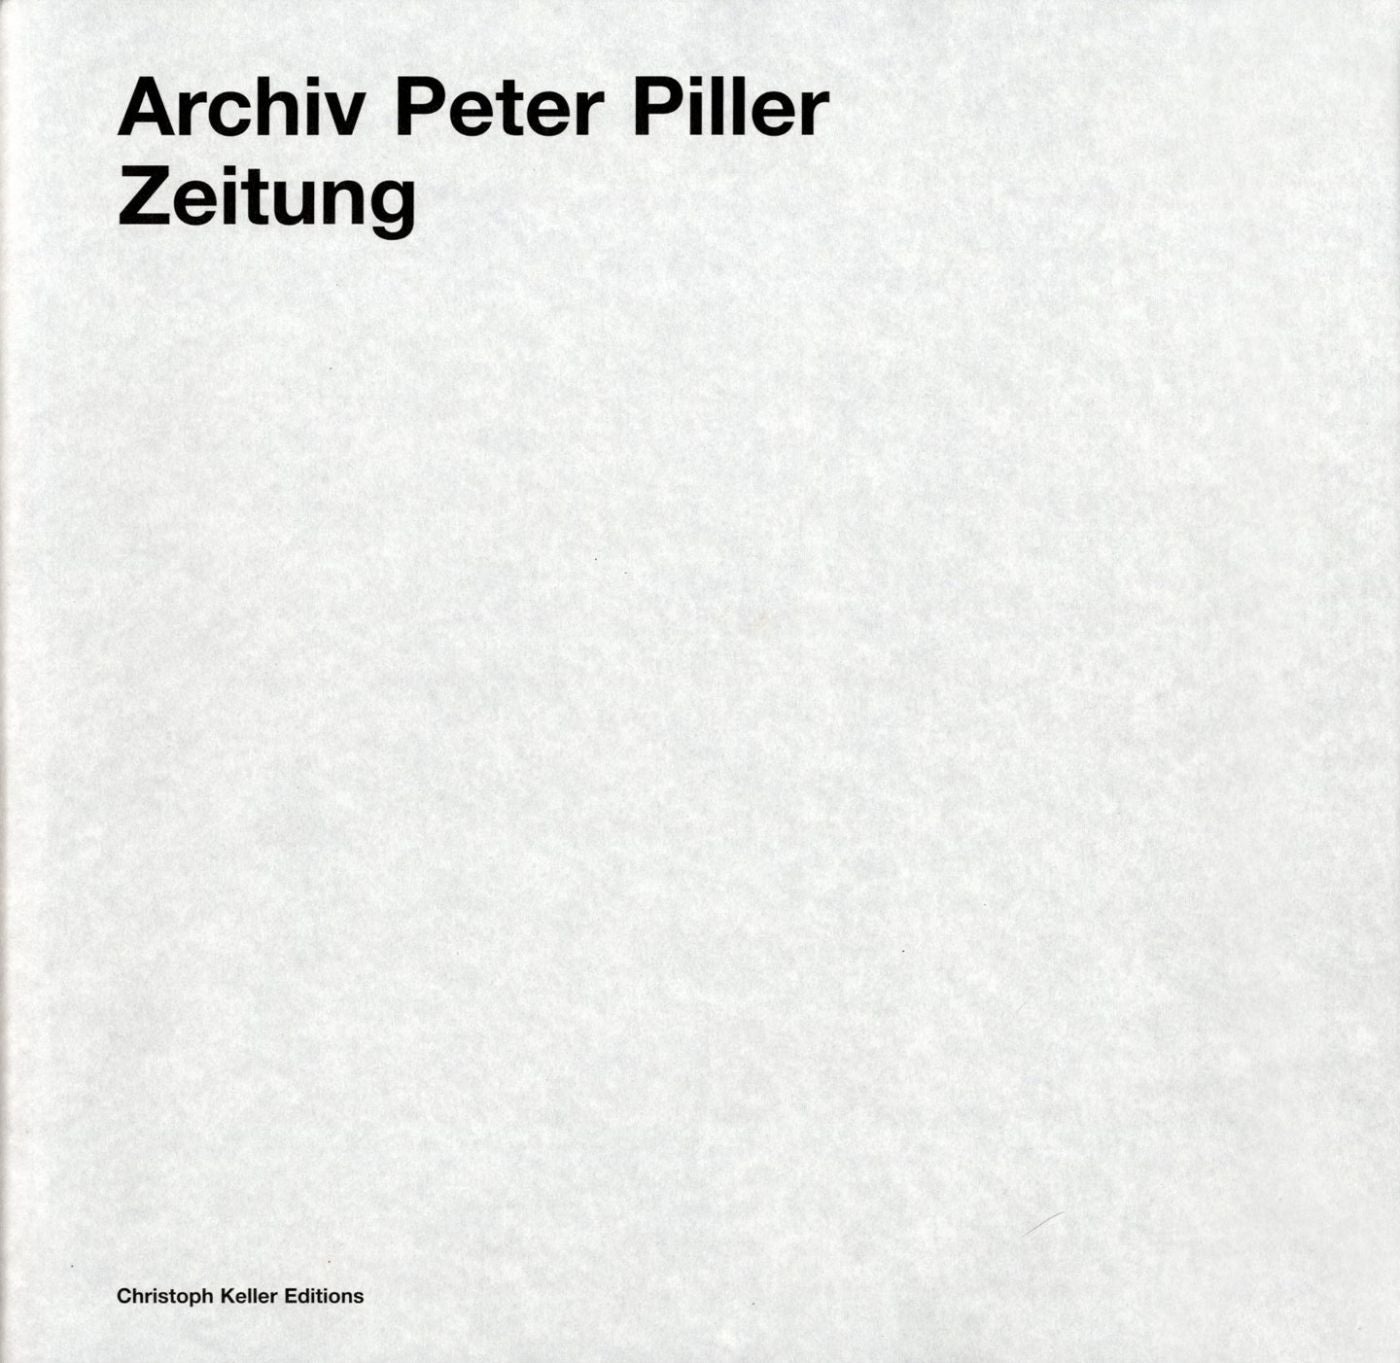 Archiv Peter Piller: Zeitung